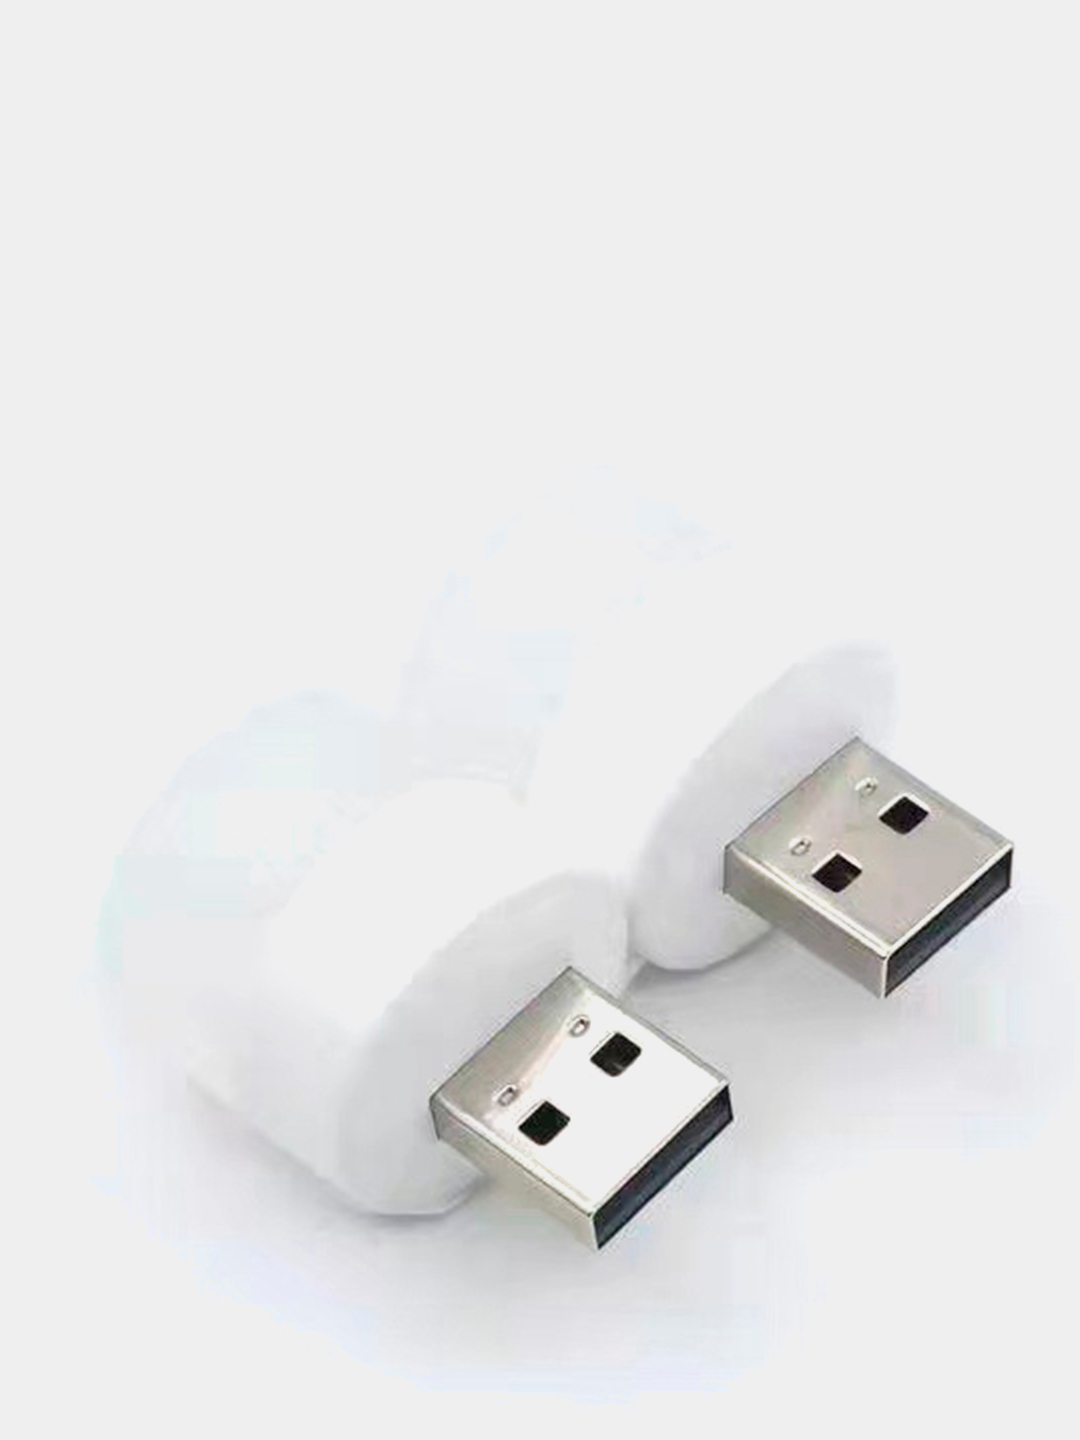 USB лампочка, мини ночник LED светильник за 89 ₽  в интернет .